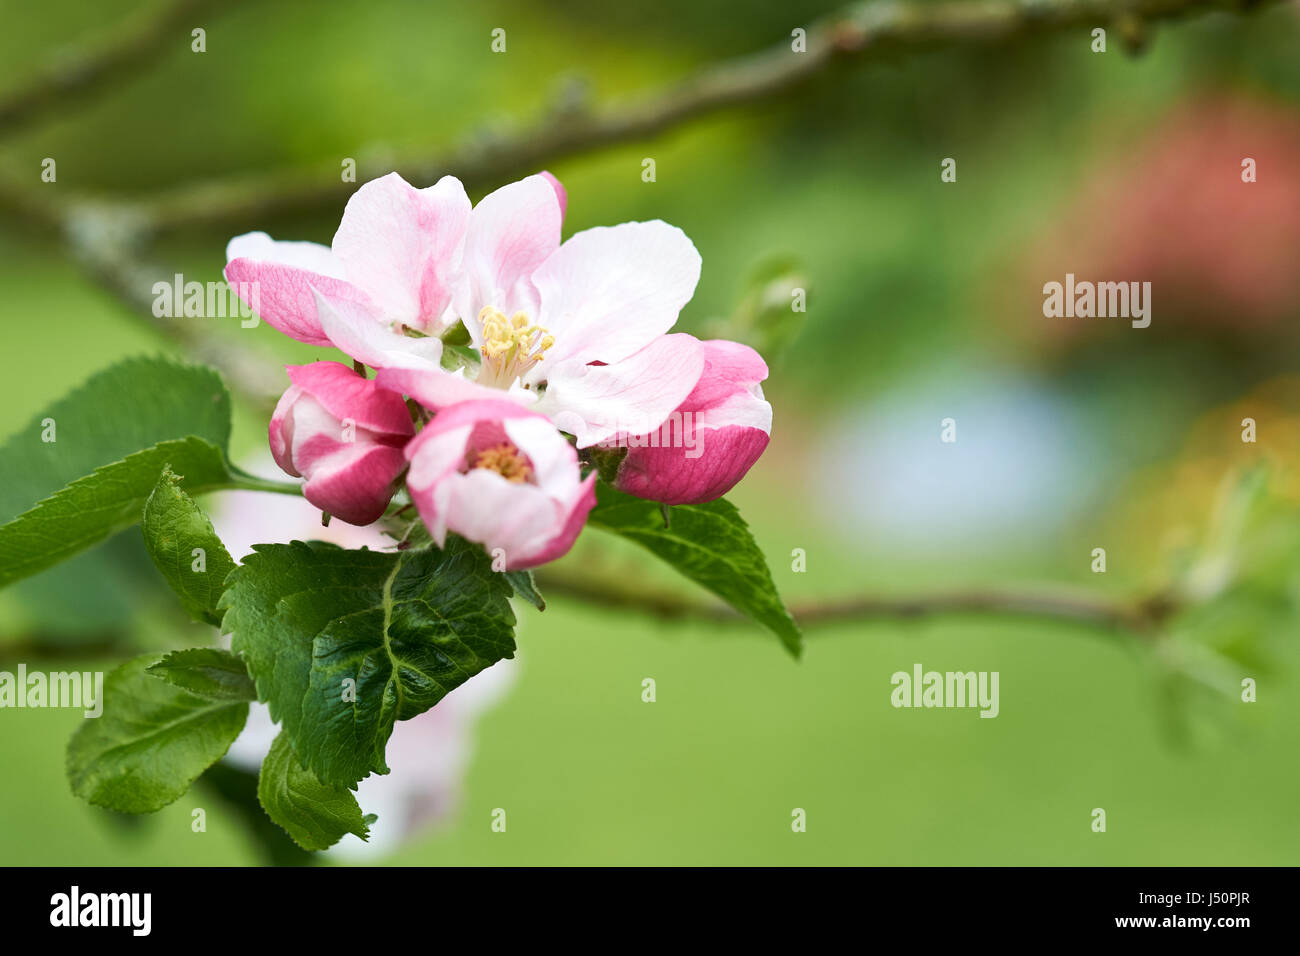 Frühling rosa Apfelblüten auf einem Apfelbaum Bramley. Stockfoto